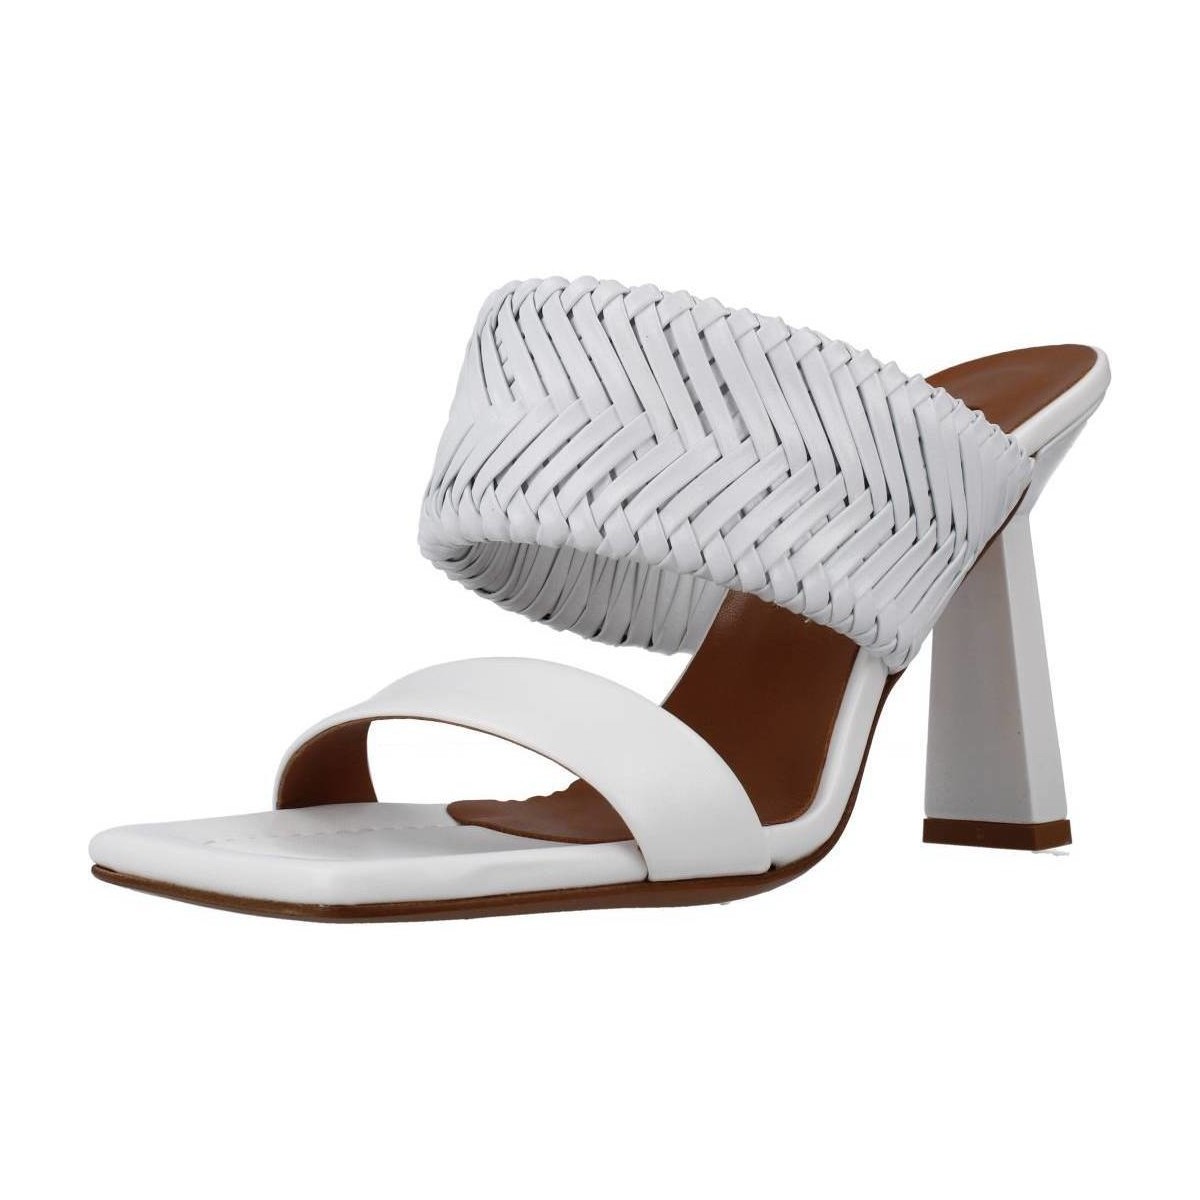 Chaussures Femme Sandales et Nu-pieds Albano 3095AL Blanc